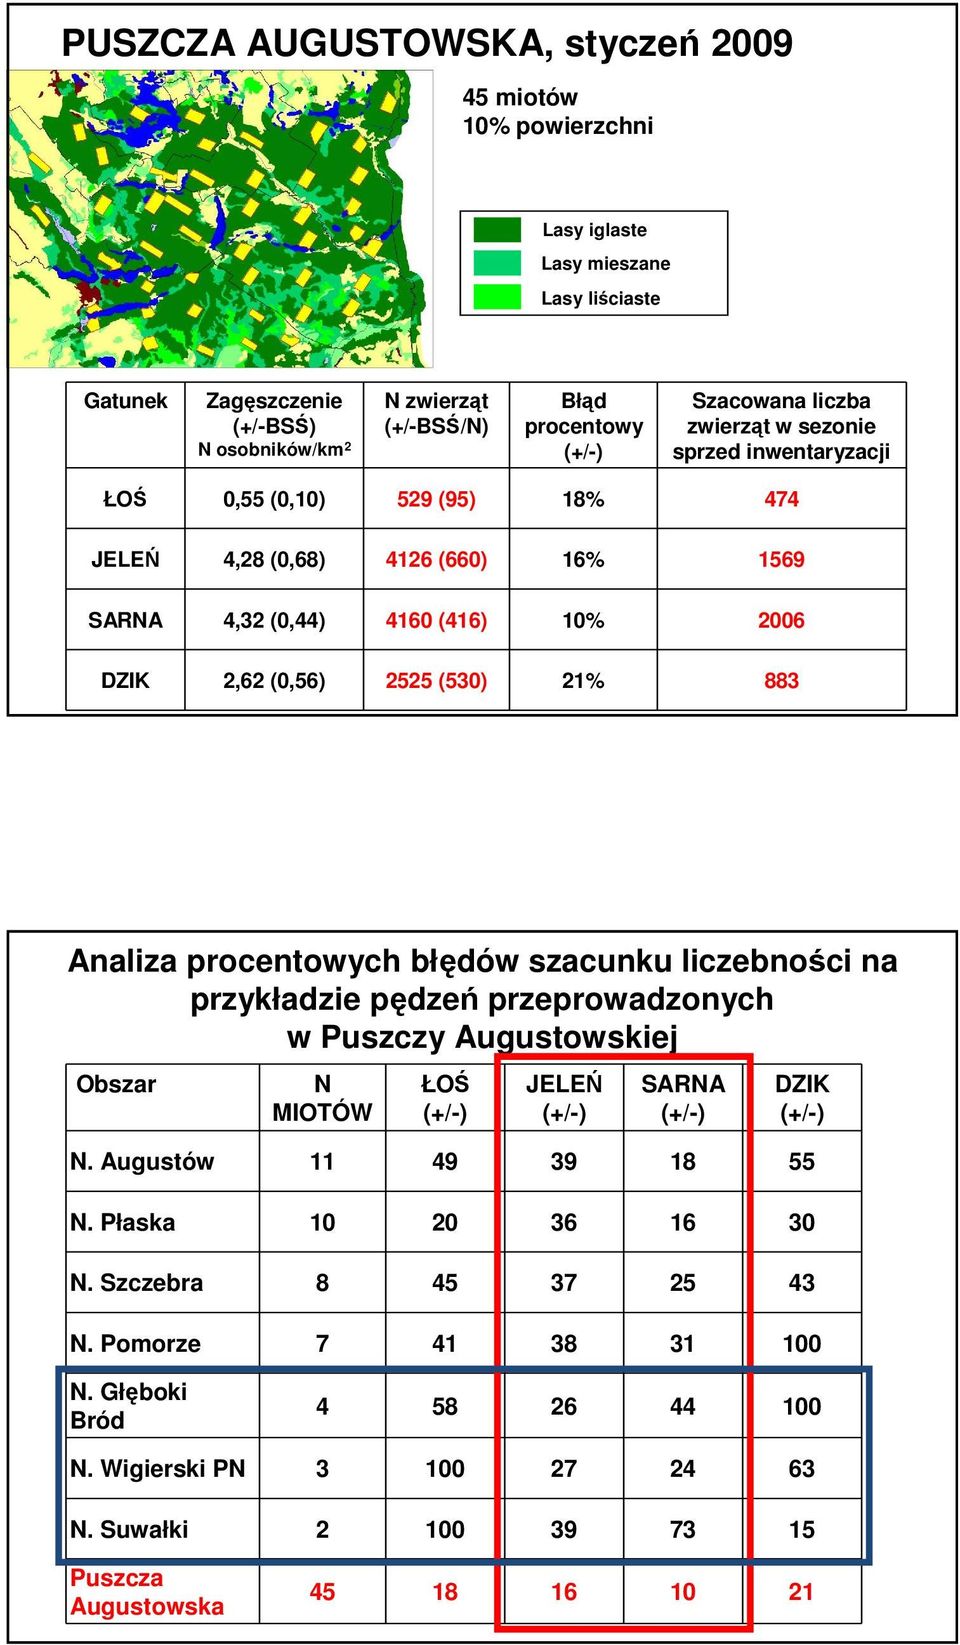 (530) 21% 883 Analiza procentowych błędów szacunku liczebności na przykładzie pędzeń przeprowadzonych w Puszczy Augustowskiej Obszar N MIOTÓW ŁOŚ JELEŃ SARNA DZIK N. Augustów 11 49 39 18 55 N.